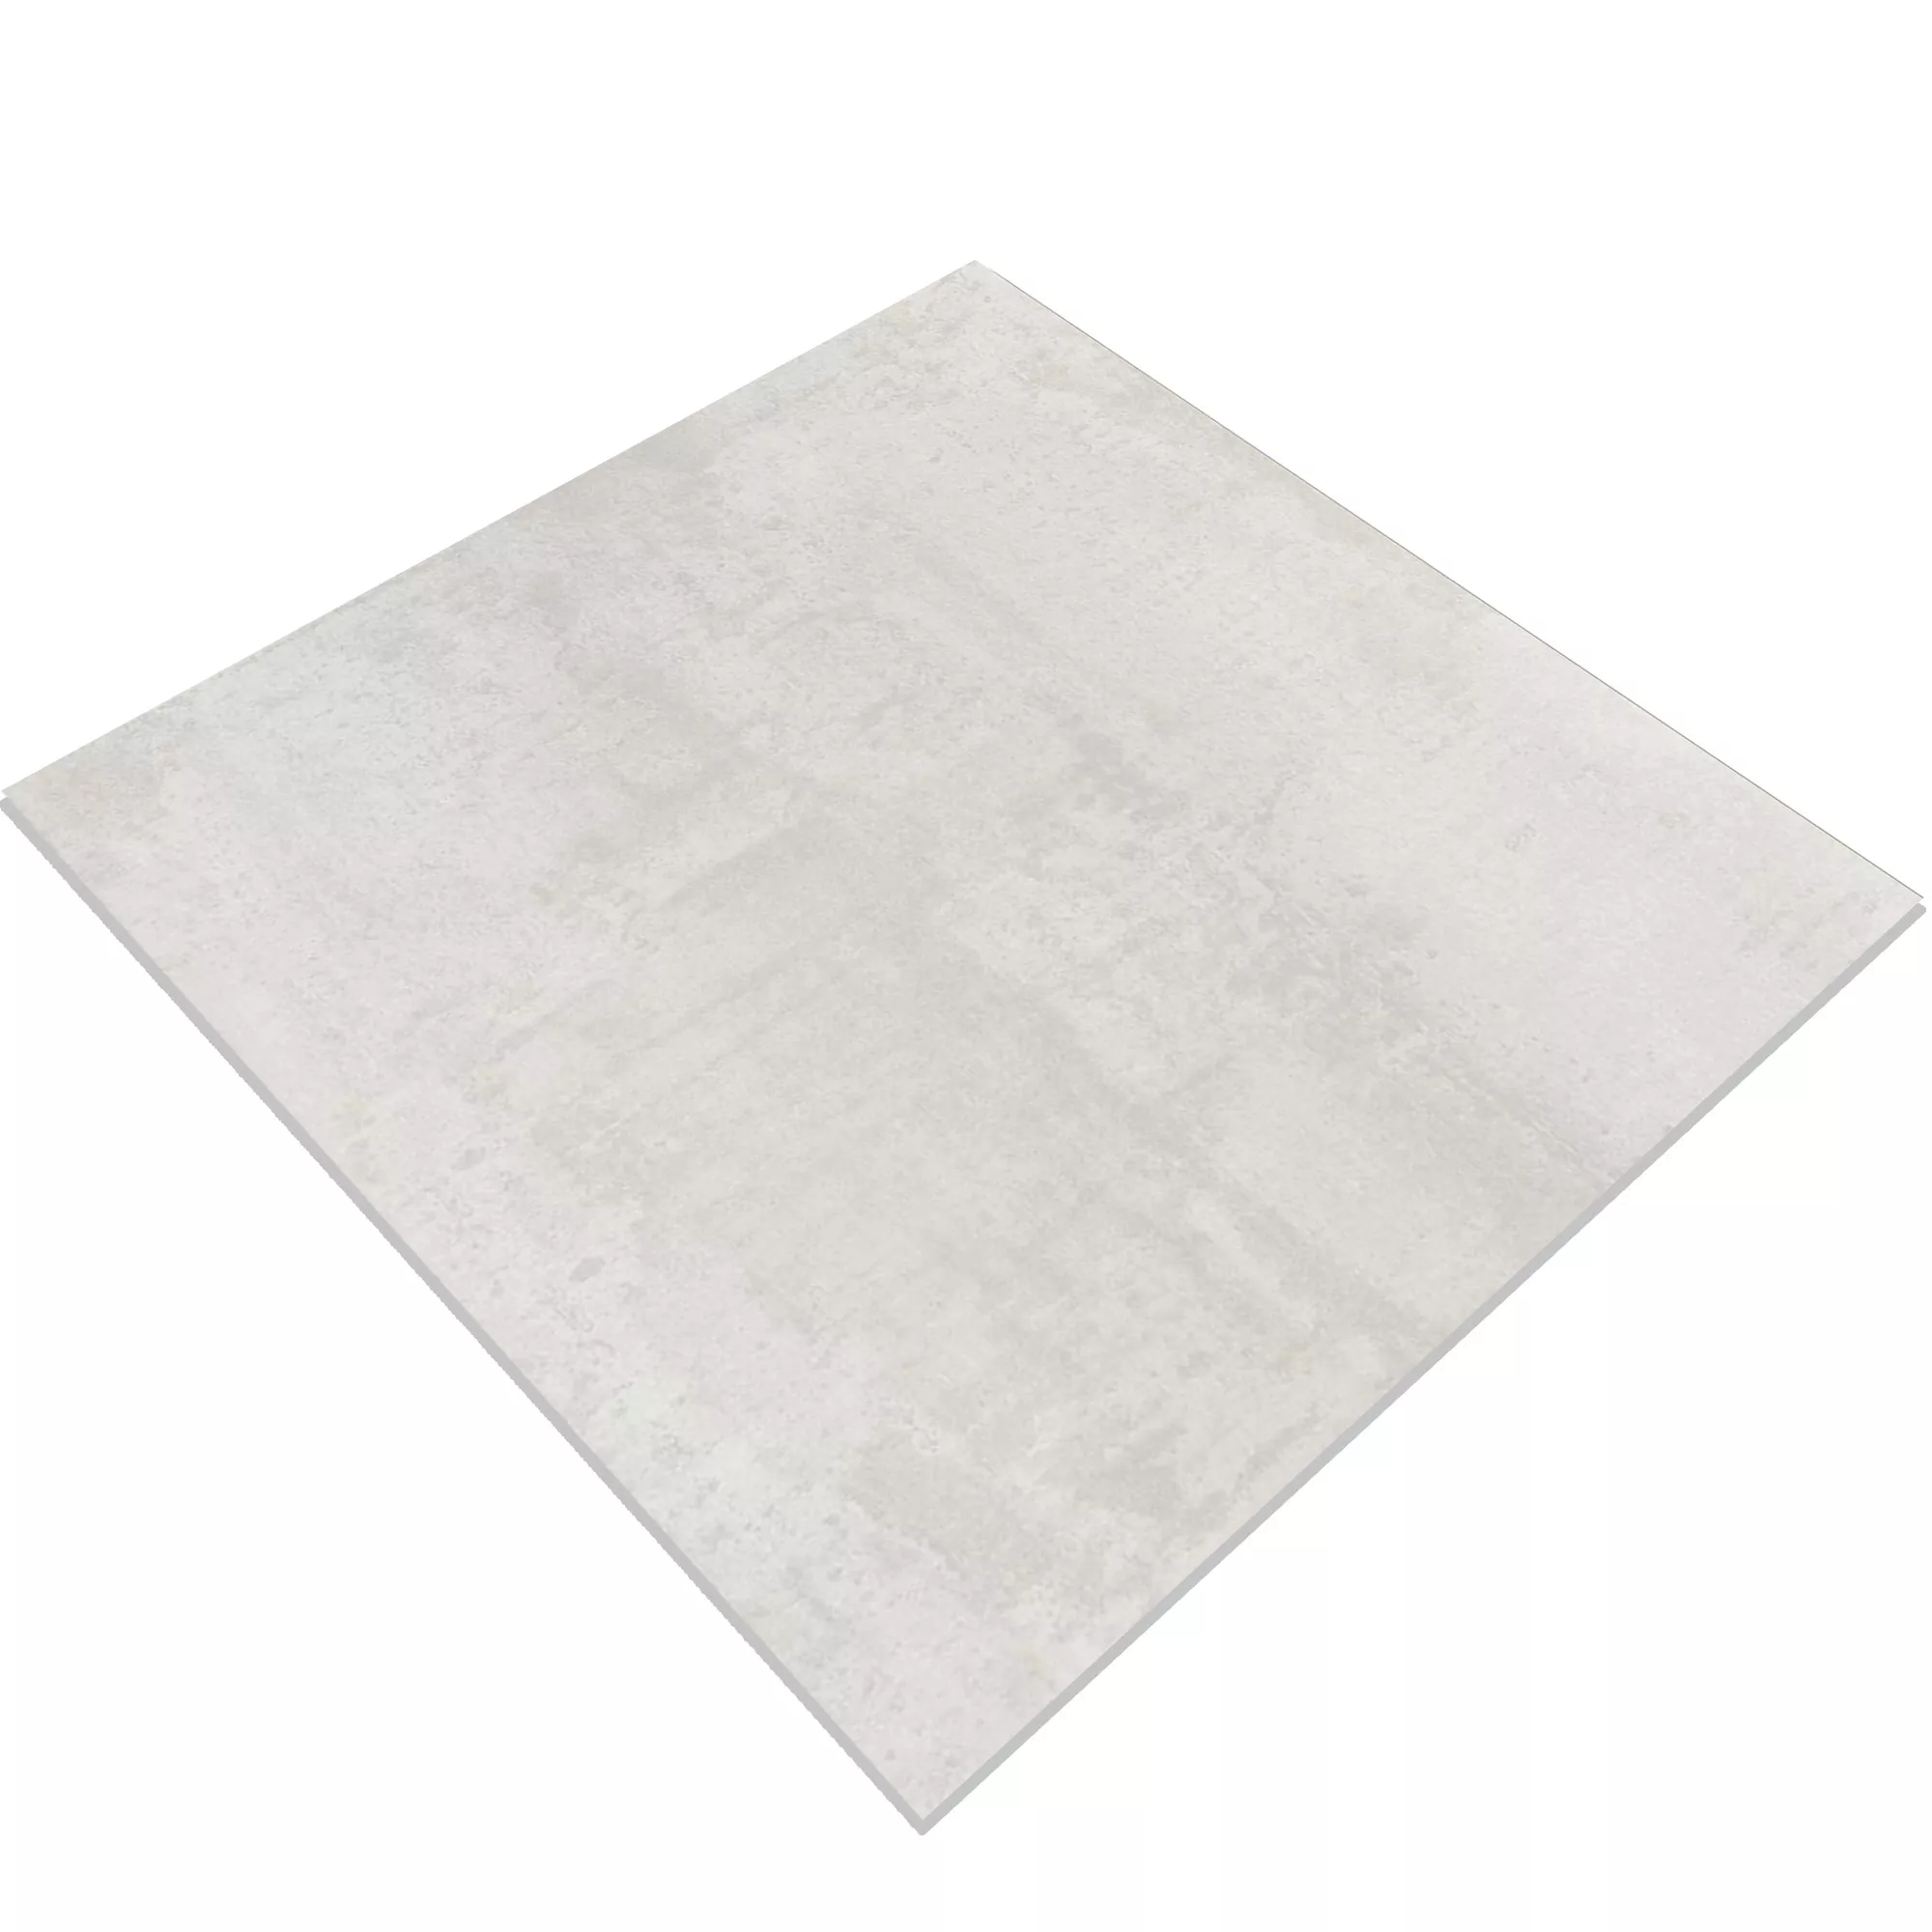 Πρότυπο Πλακάκια Δαπέδου Herion Μεταλλική Εμφάνιση Lappato Blanco 60x60cm